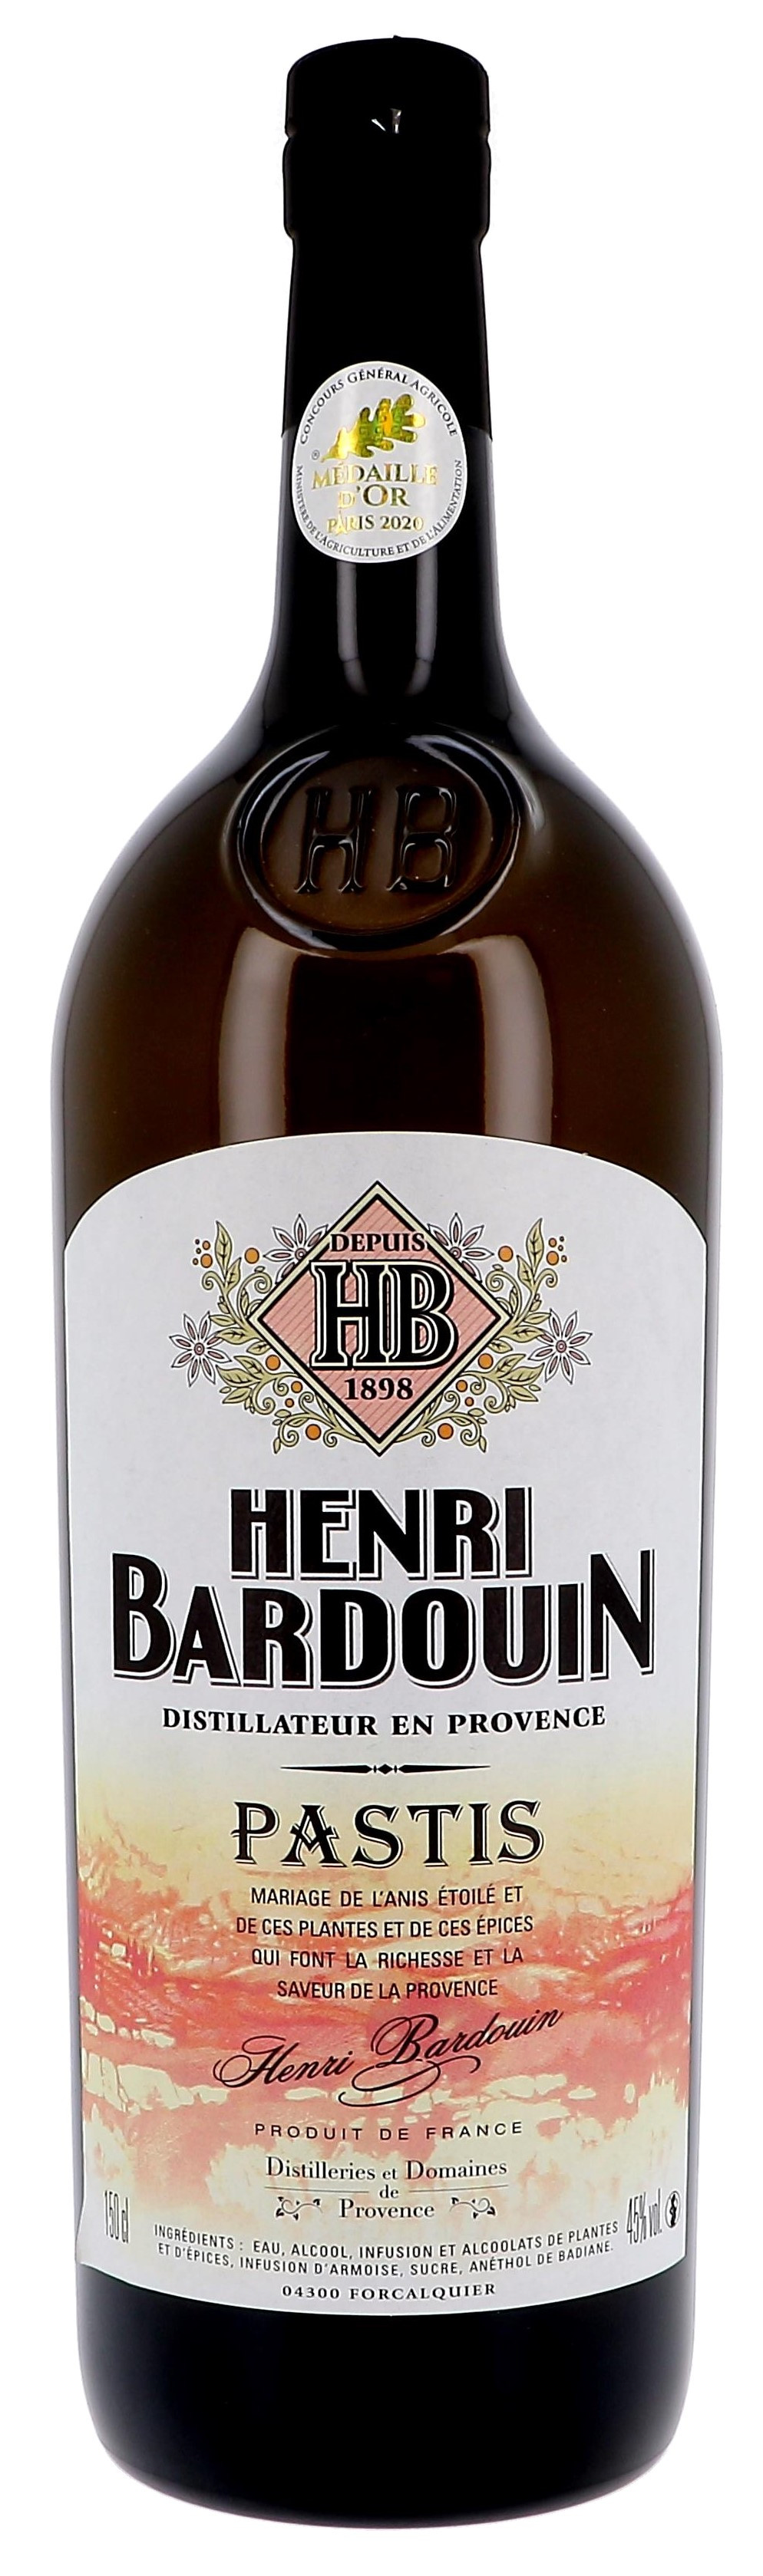 Pastis Henri Bardouin 150cl 45% Magnum (Anijs & Pastis)